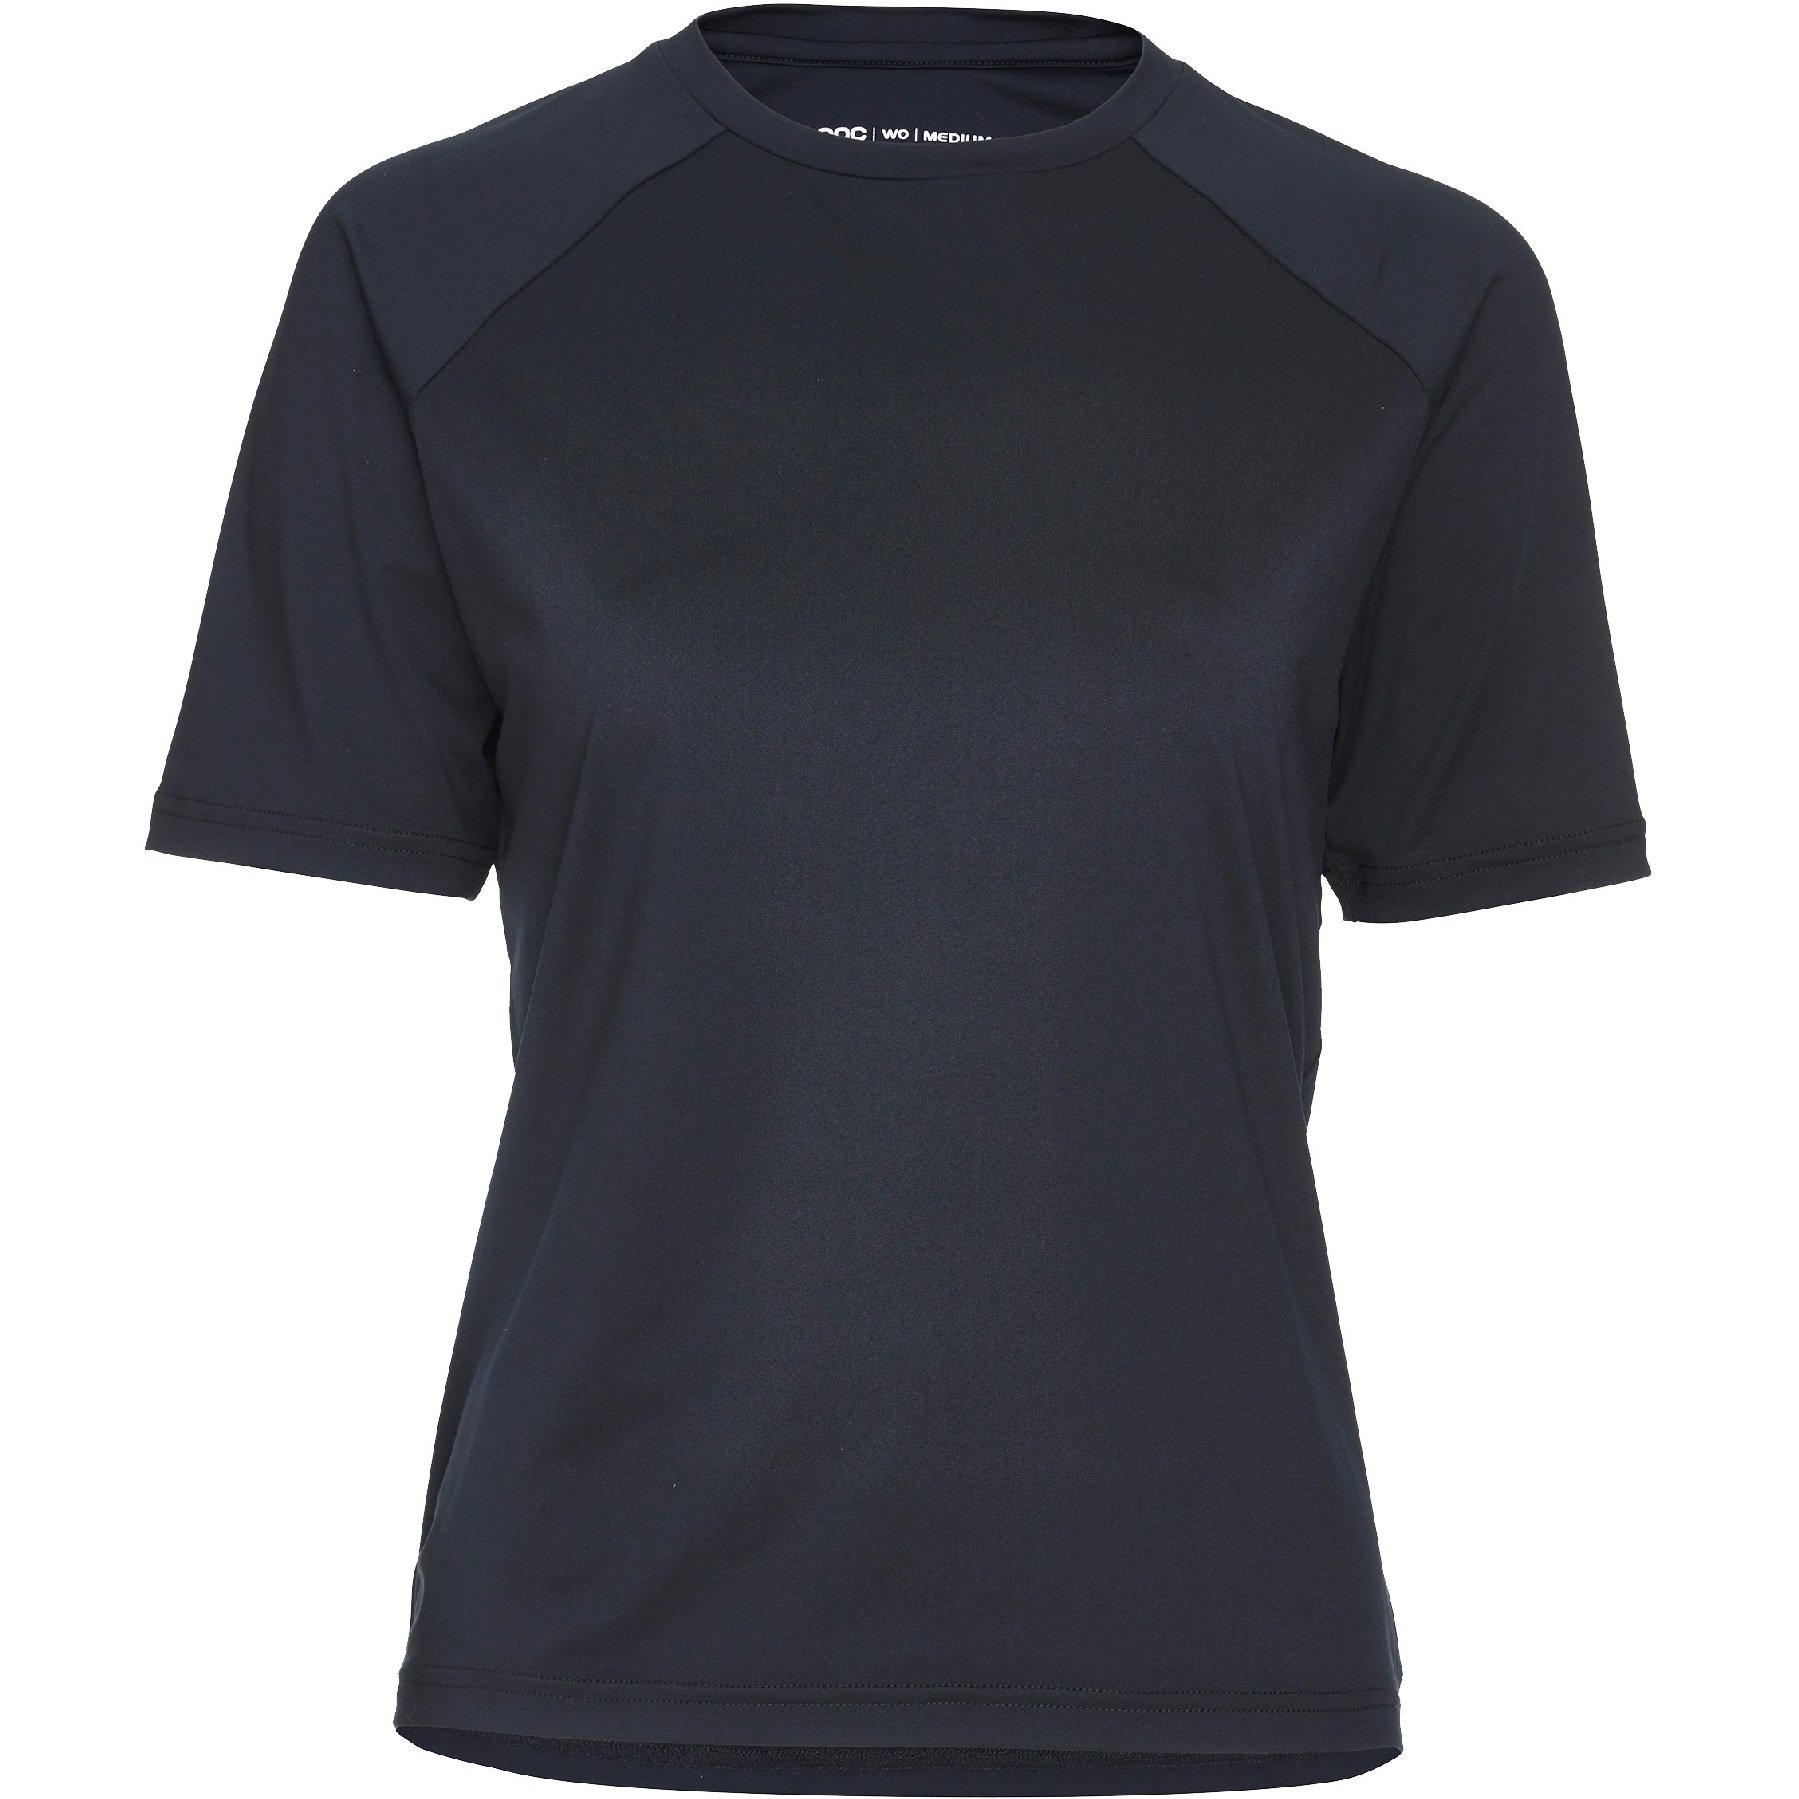 Produktbild von POC Reform Enduro Light T-Shirt Damen - 1002 Uranium Black